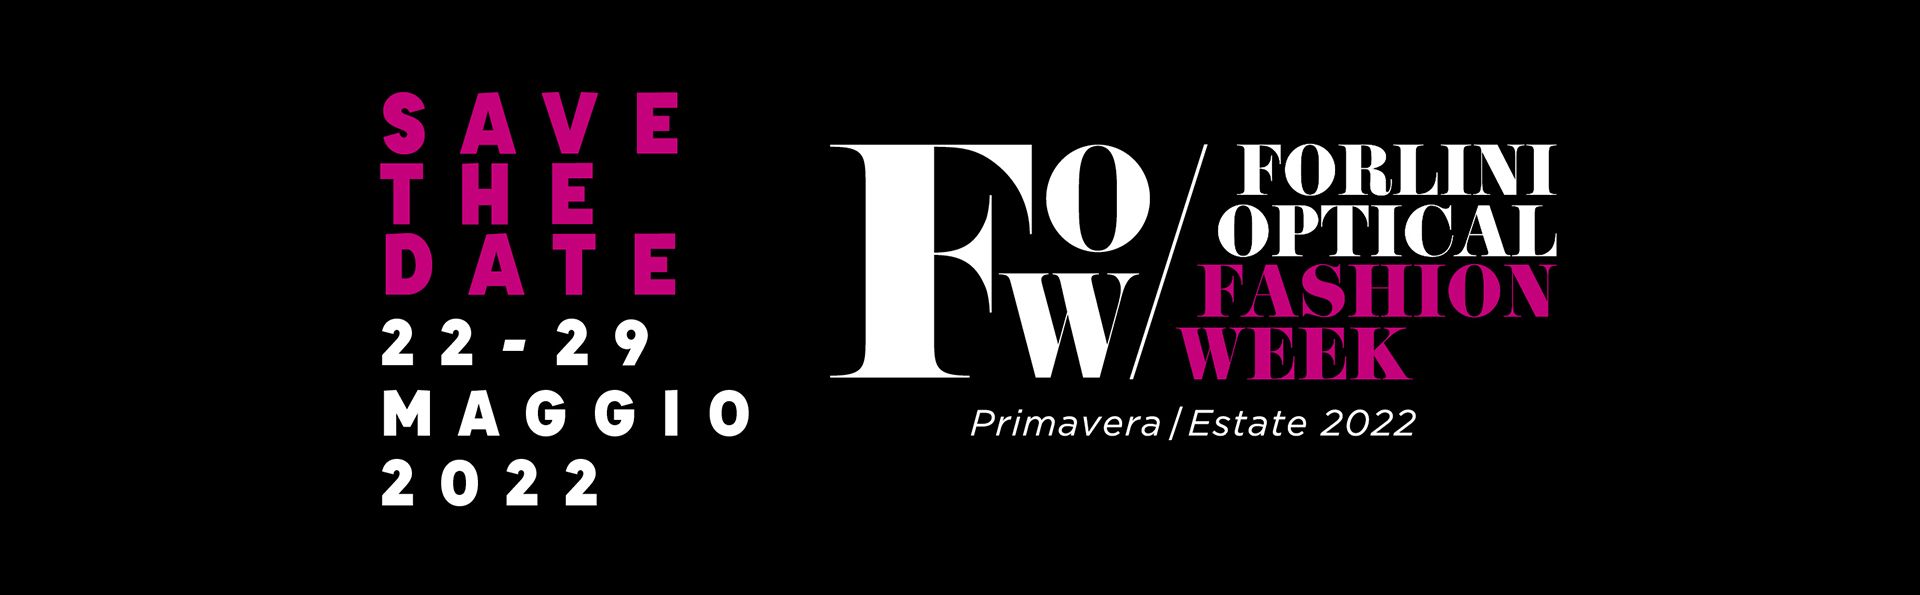 Forlini Optical Fashion Week 2022